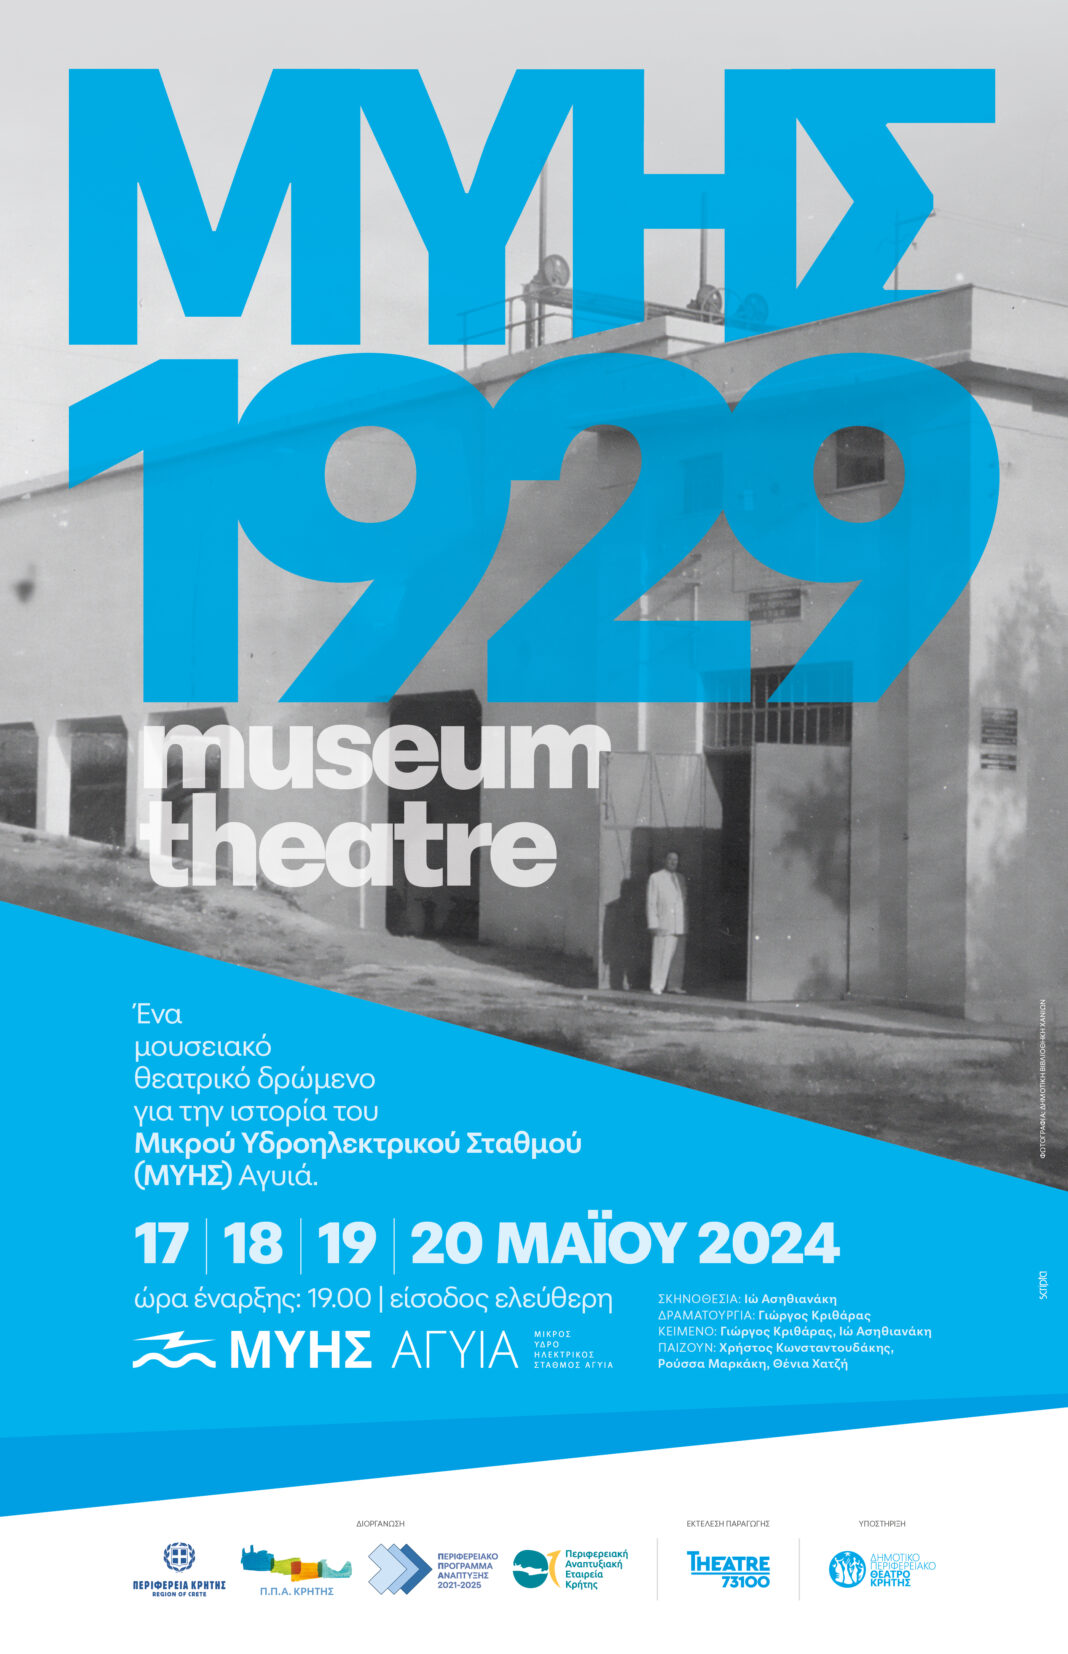 2 Χρόνια ΜΥΗΣ Αγυιά: Το Θέατρο ως μέσο αφήγησης ενός Μουσείου!